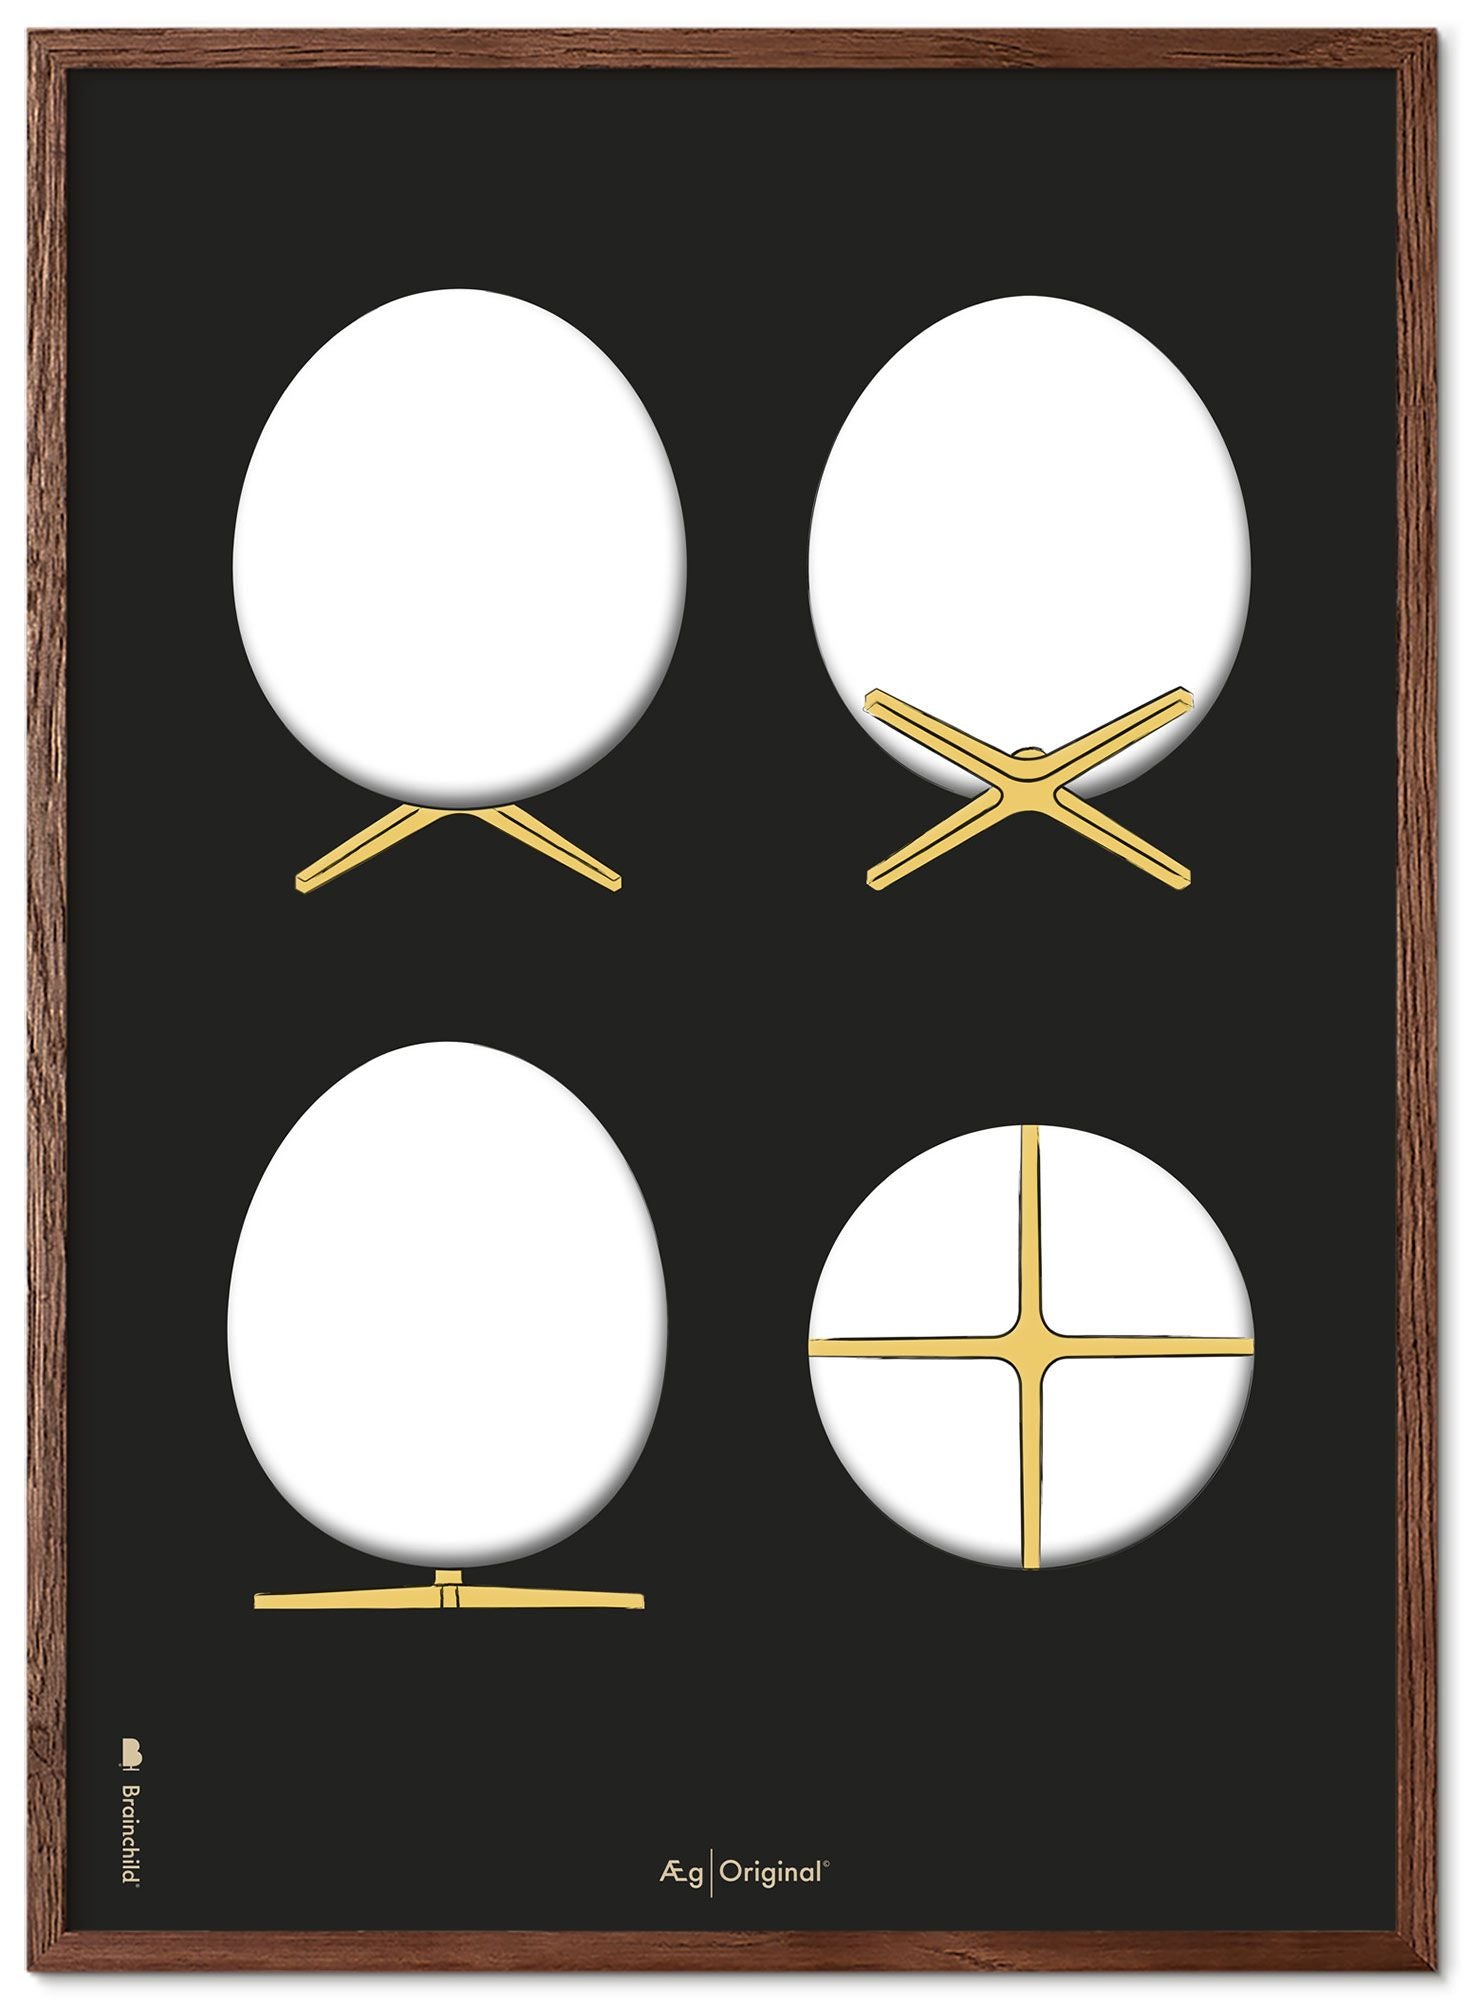 Brainchild Das Ei Design Skizziert Poster Rahmen aus dunklem Holz 50x70 Cm, schwarzer Hintergrund